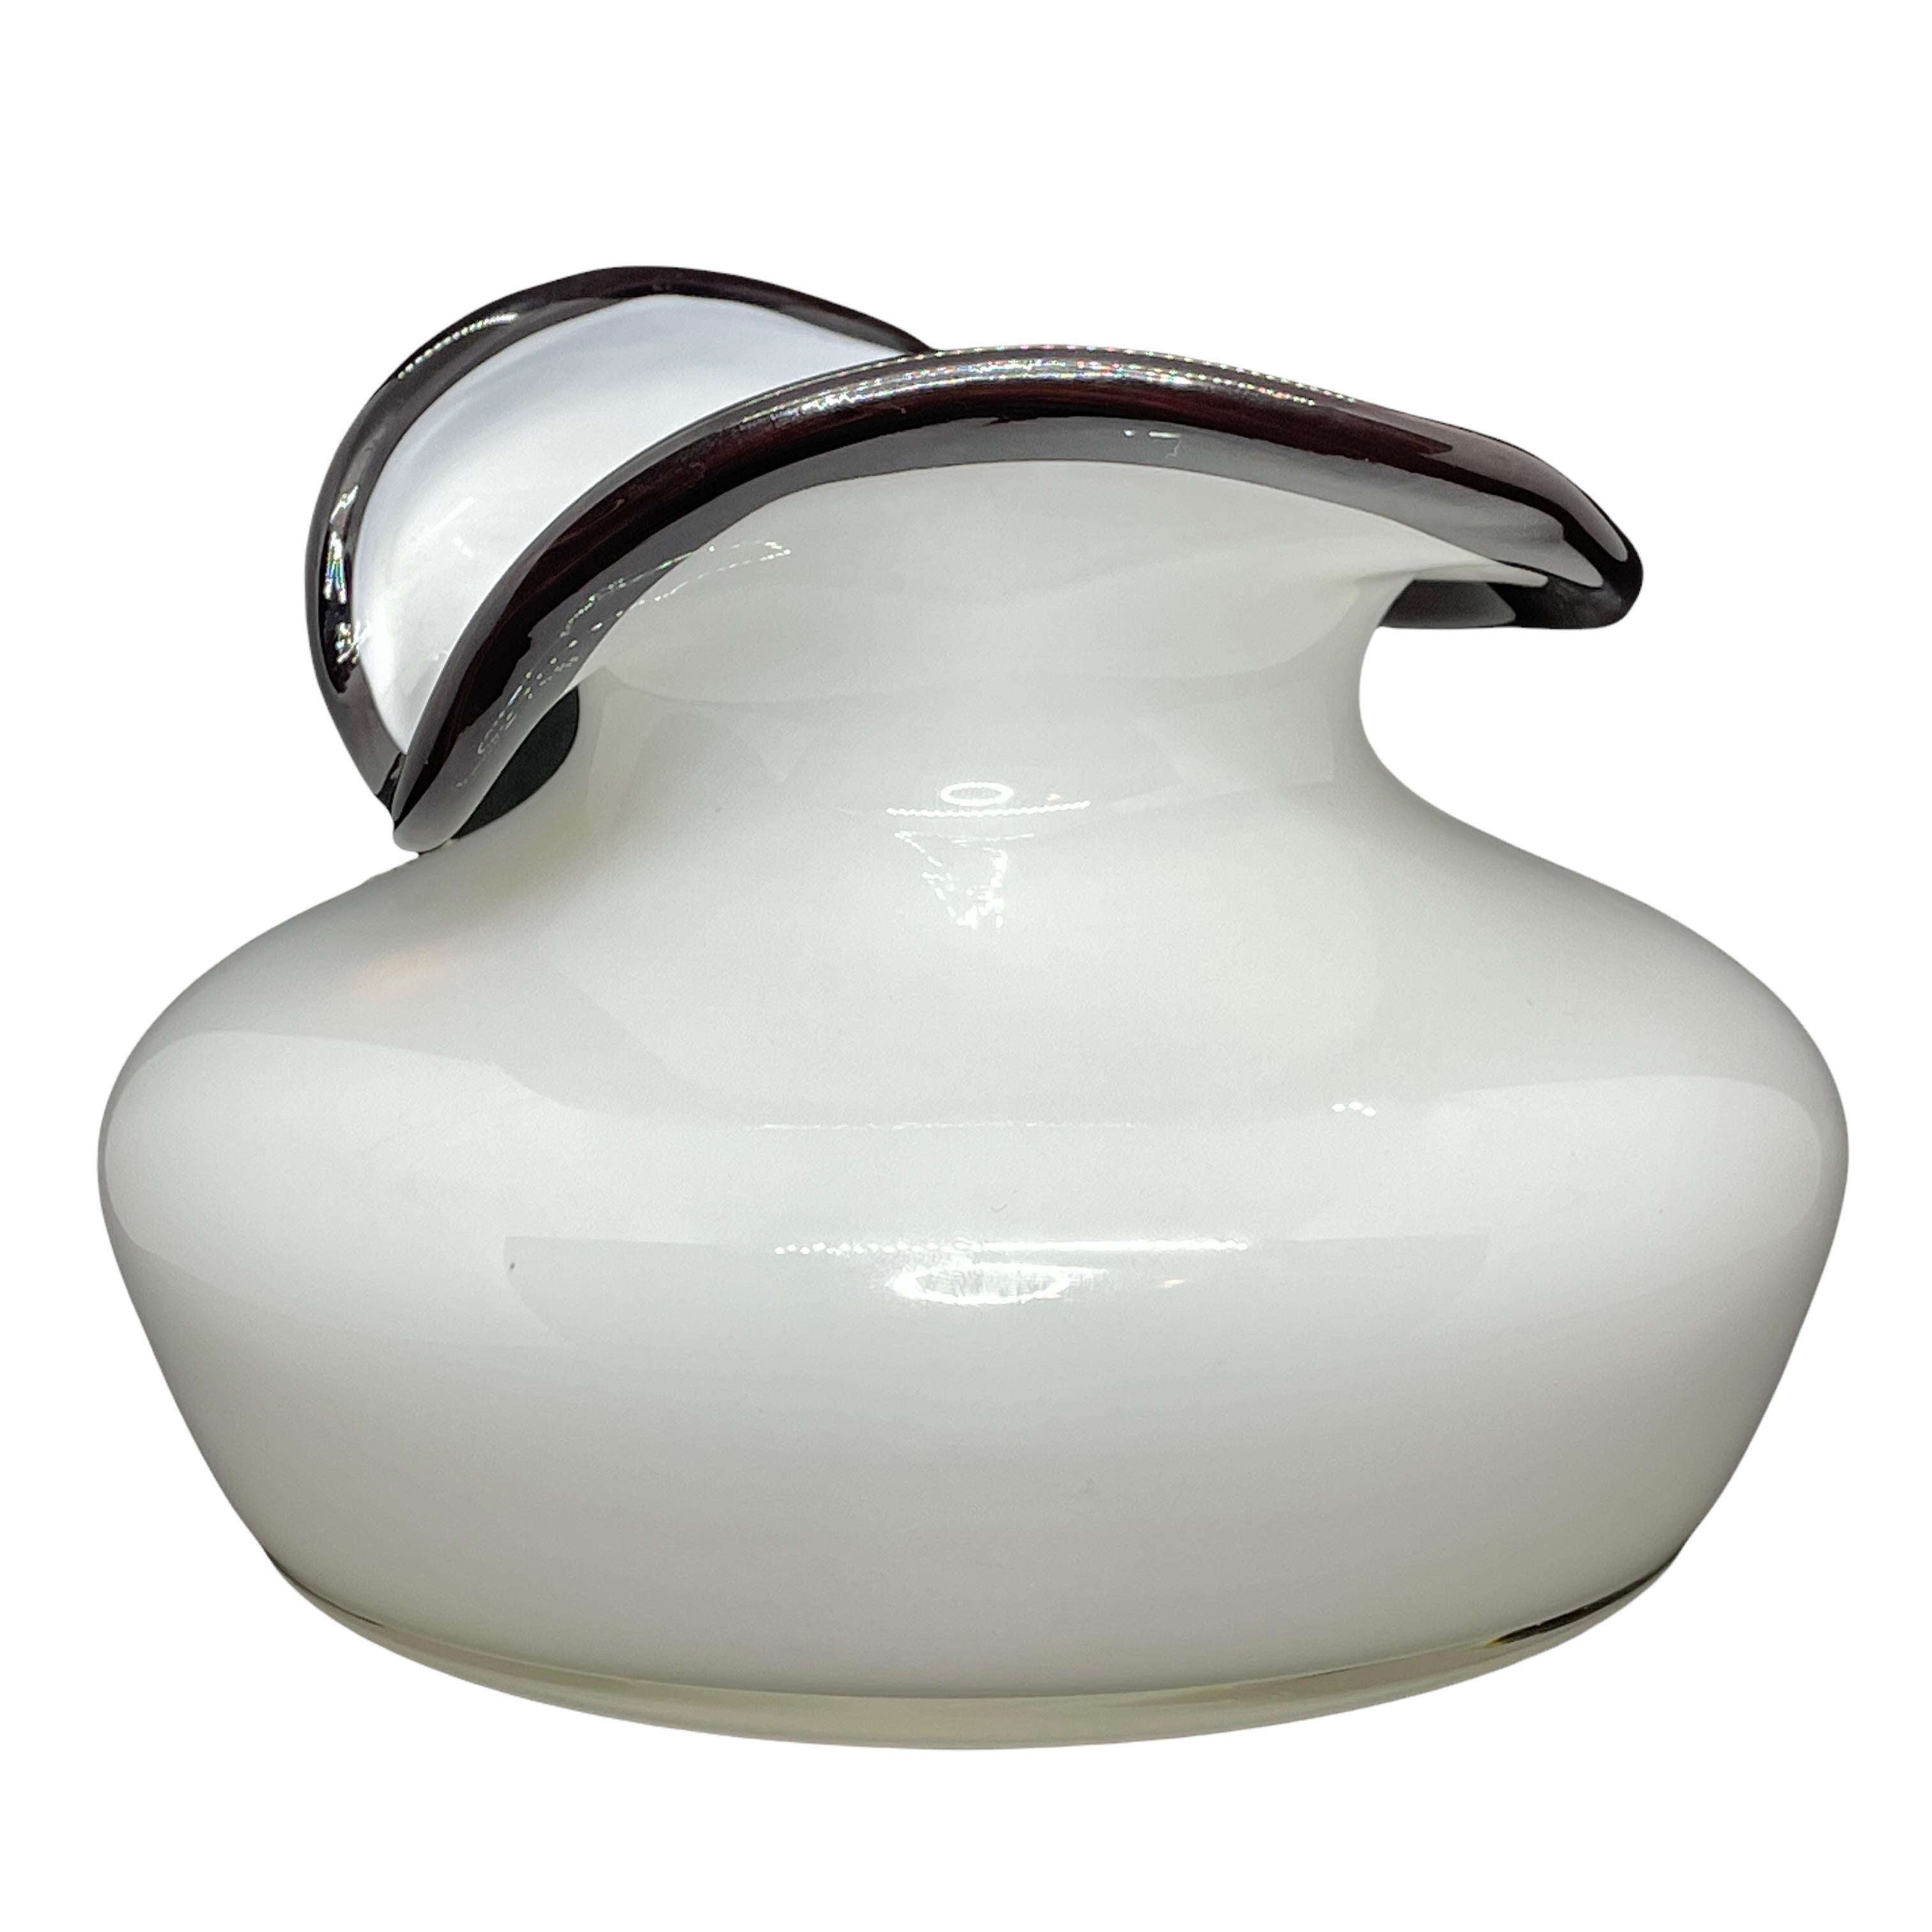 Un beau vase en verre avec une entrée à volants conçu par Jerzy Sluczan - Orkusz pour les Verreries Tarnowiec en Pologne dans les années 1980. Un vase fait à la main en verre au lait avec des détails en verre halite. L'objet de collection, conservé